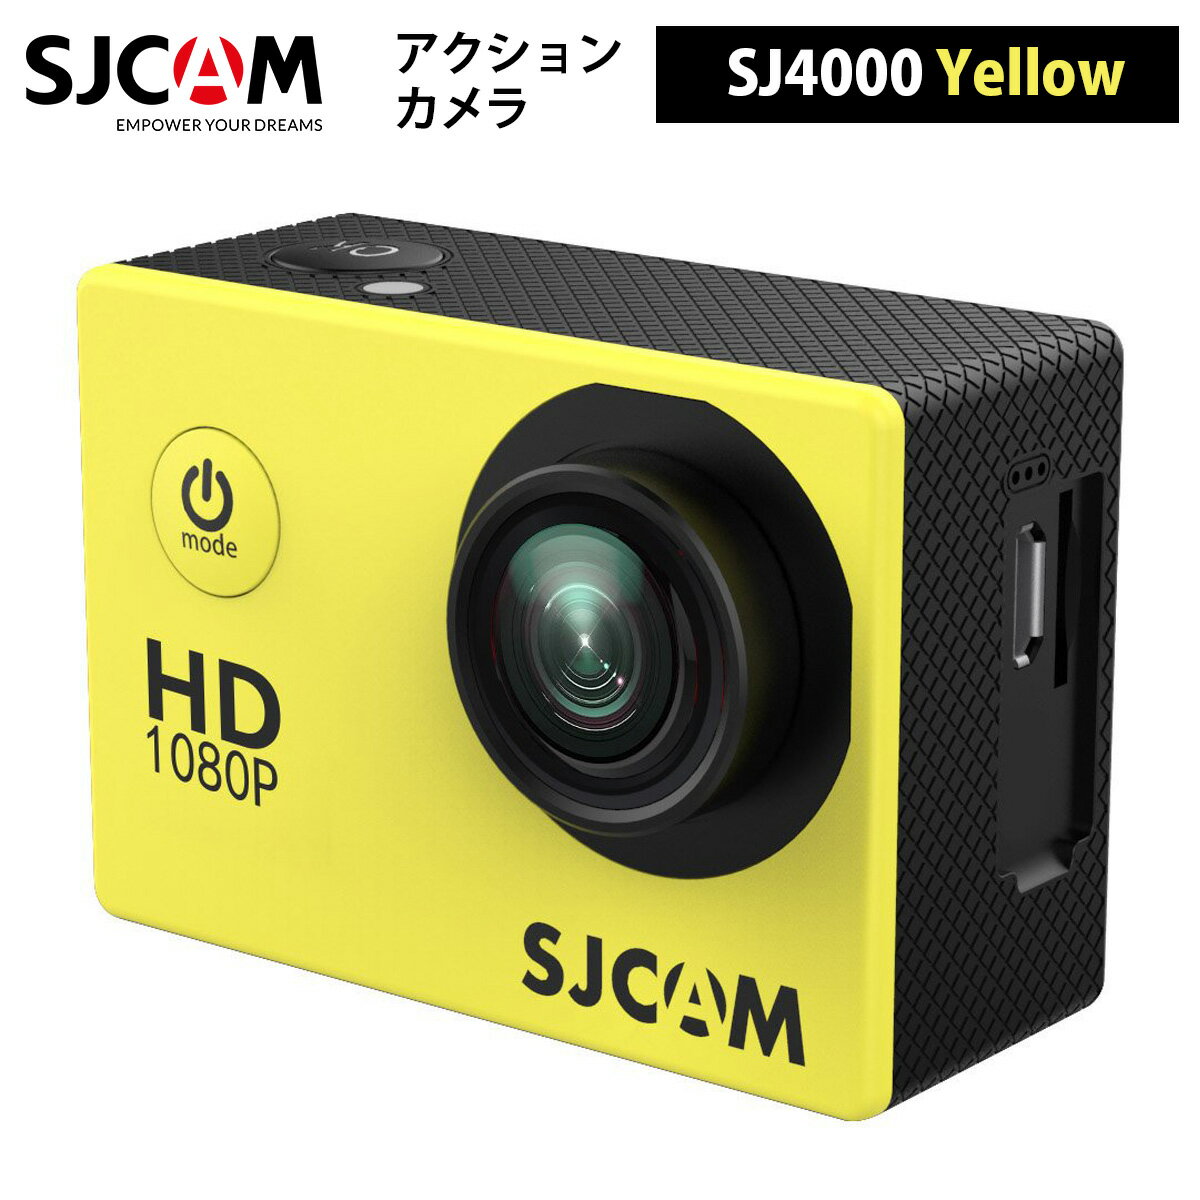 SJCAM 【正規輸入品】 アクションカメラ SJ4000（色：イエロー）4MPセンサー 170°ワイド視野角 21.5インチLCD 防水ケース付属 水中撮影 カラーバリエーション ポケットサイズ 軽量 12メガピクセルセンサー 1080Pビデオ記録 1920×1080 フルHD解像度